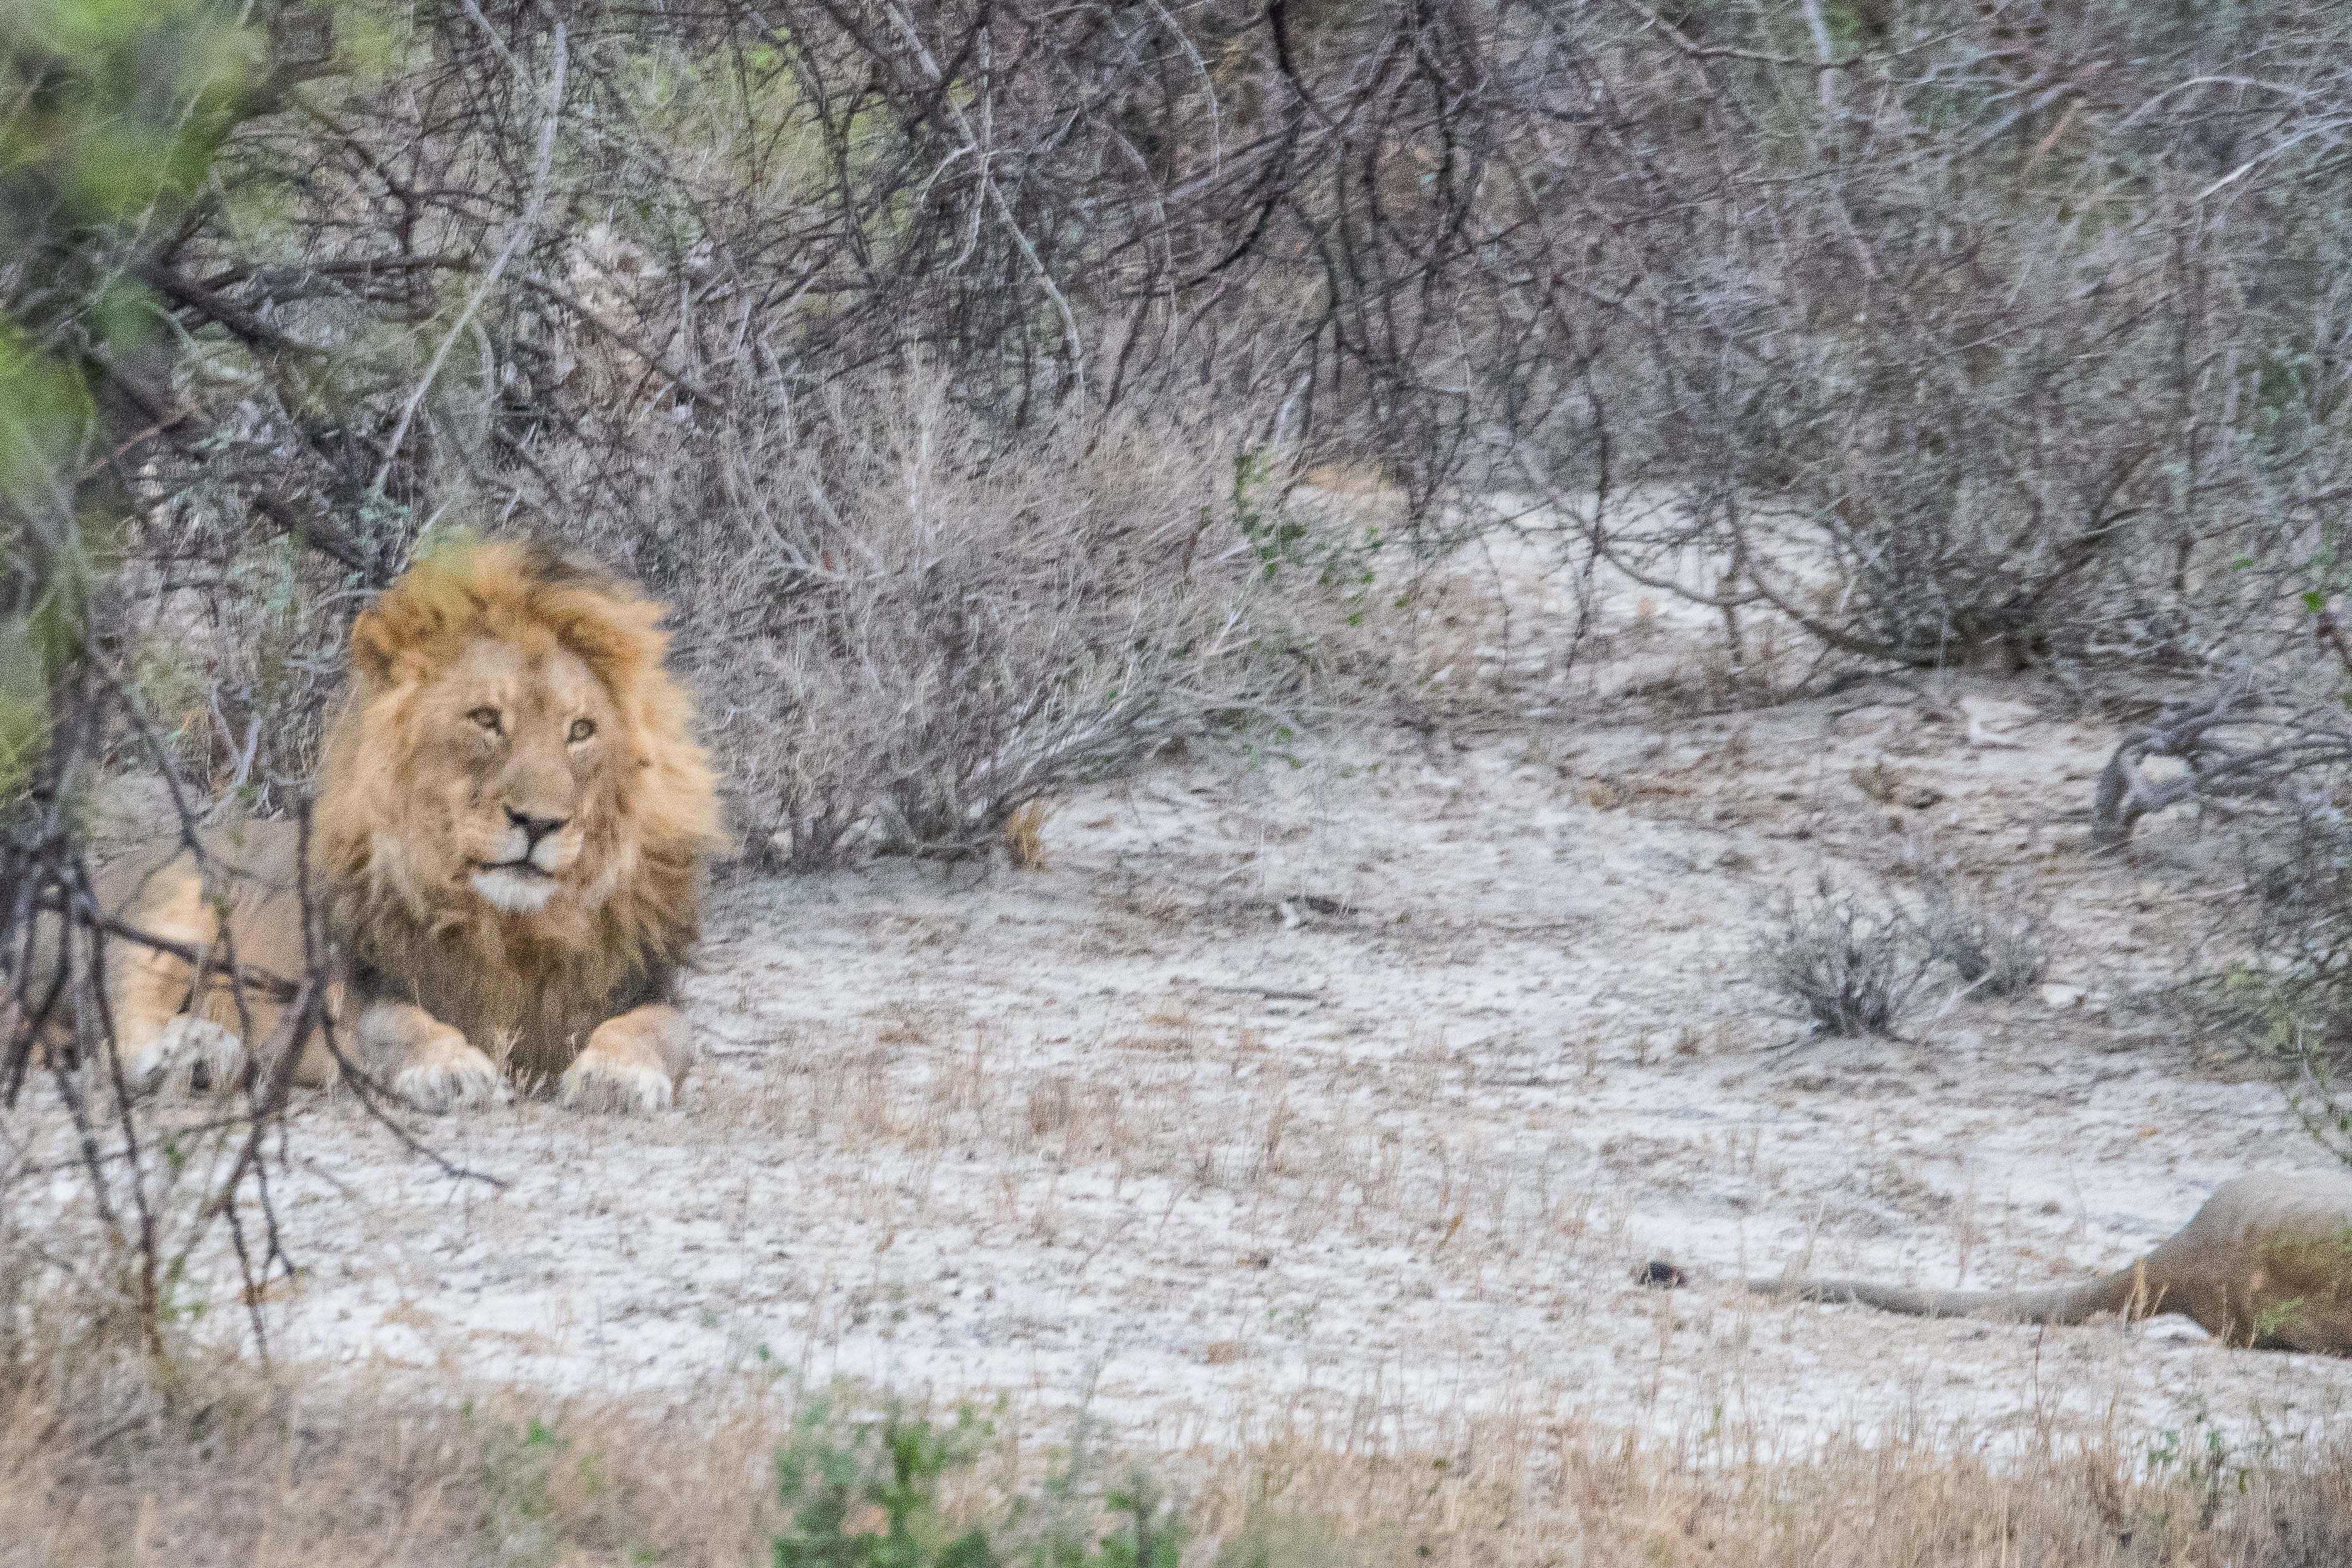 Le Lion parait maintenant indifférent, bien qu'il garde un œil sur la lionne, qui n'est pas partie très loin, et ne tardera probablement pas à revenir le provoquer pour tester de nouveau l'avancement de son processus d'ovulation, Onguma Nature Reserve, Etosha, Namibie.